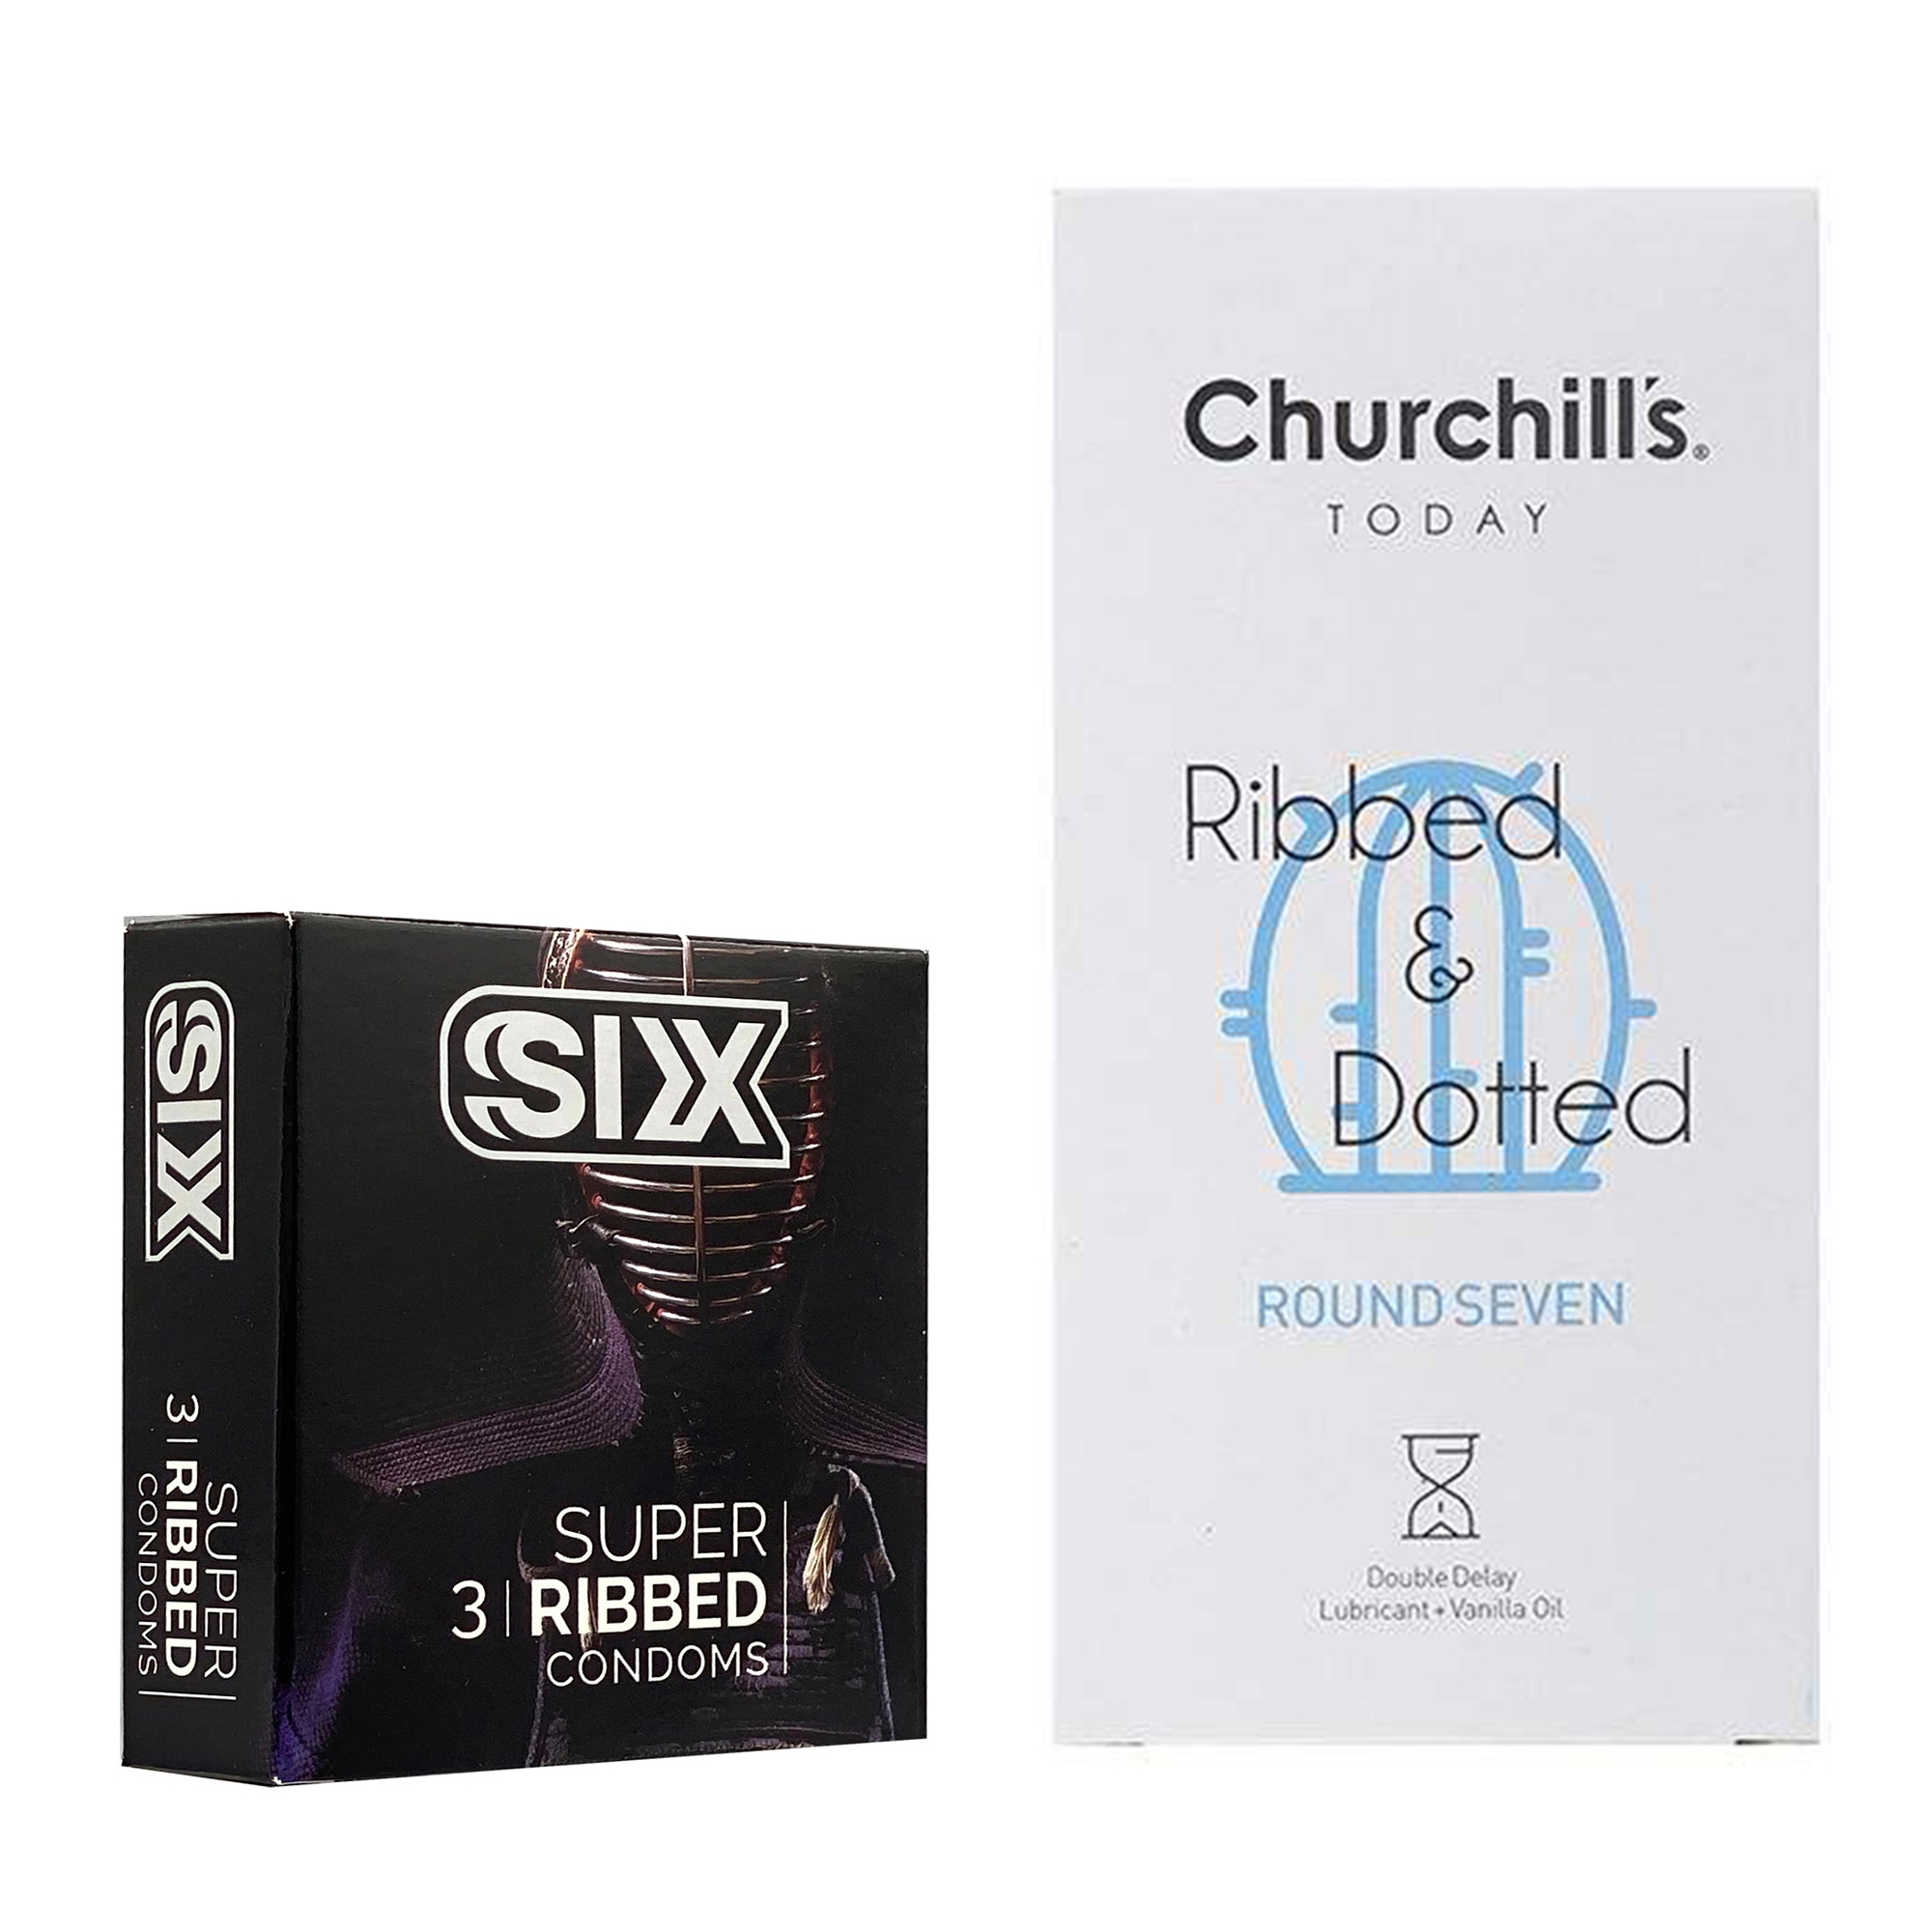 کاندوم چرچیلز مدل Round Seven بسته 12 عددی به همراه کاندوم سیکس مدل شیاردار بسته 3 عددی 